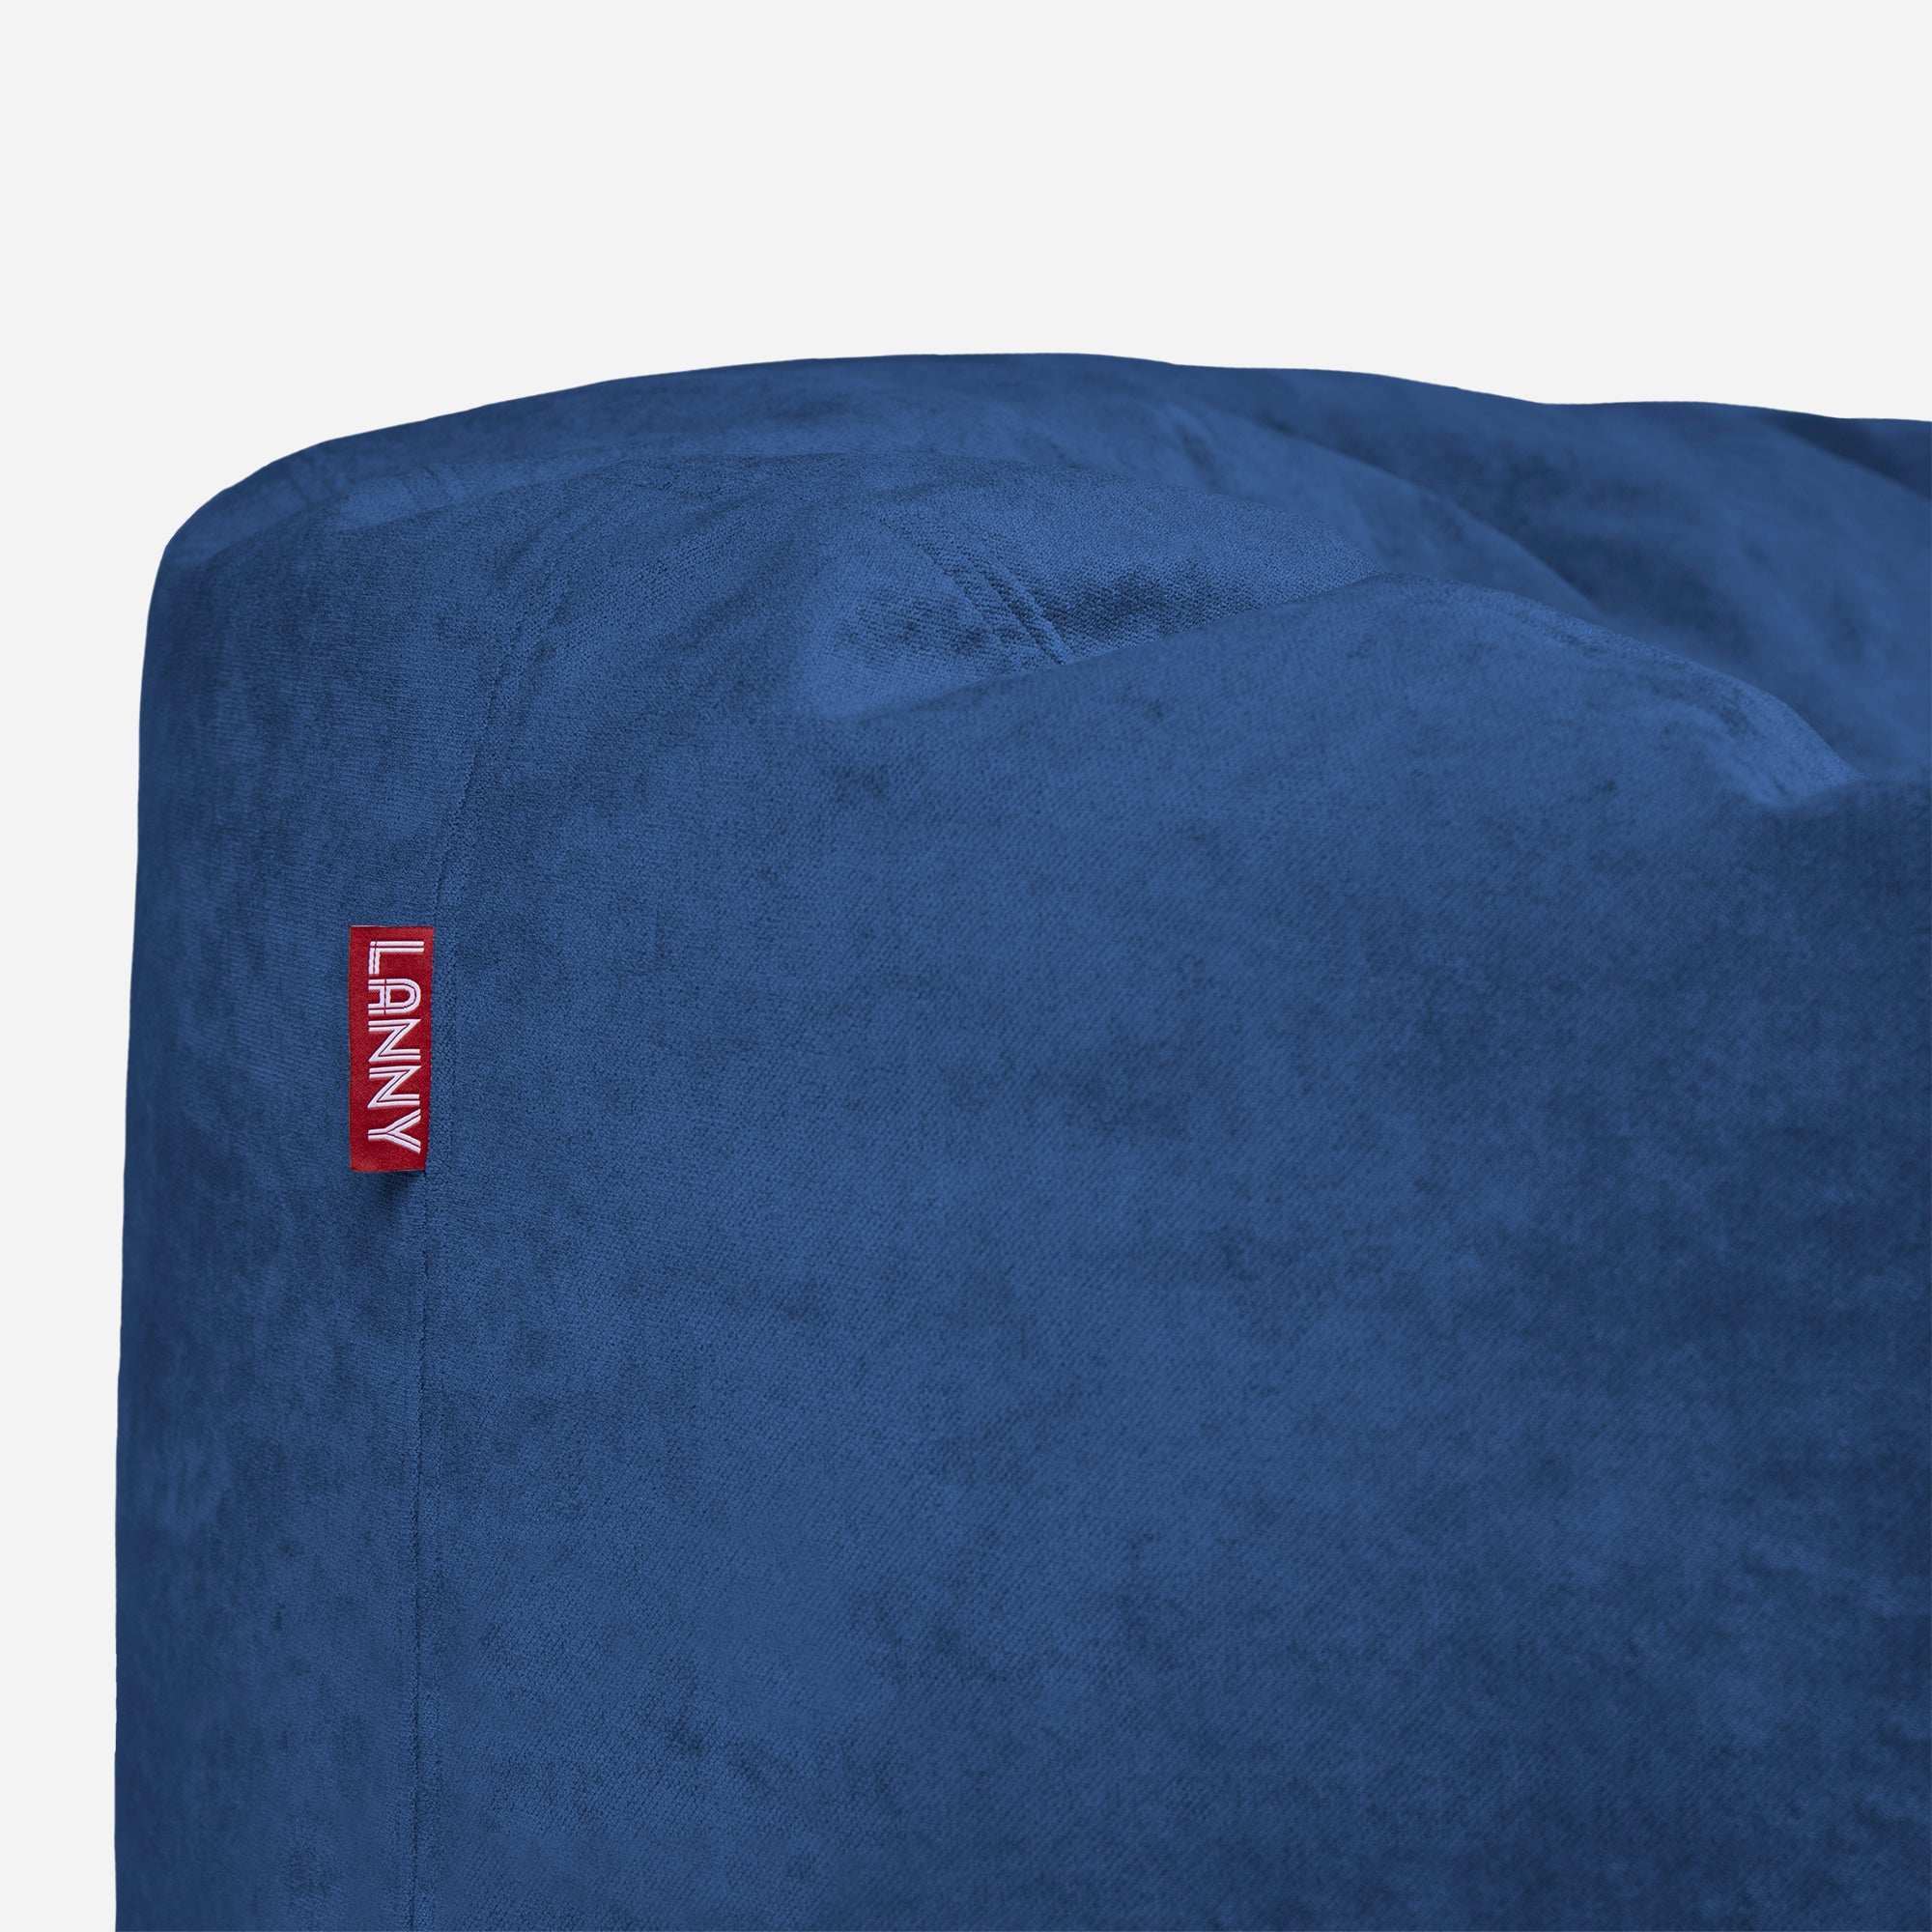 Medium Original Aldo Blue Bean Bag